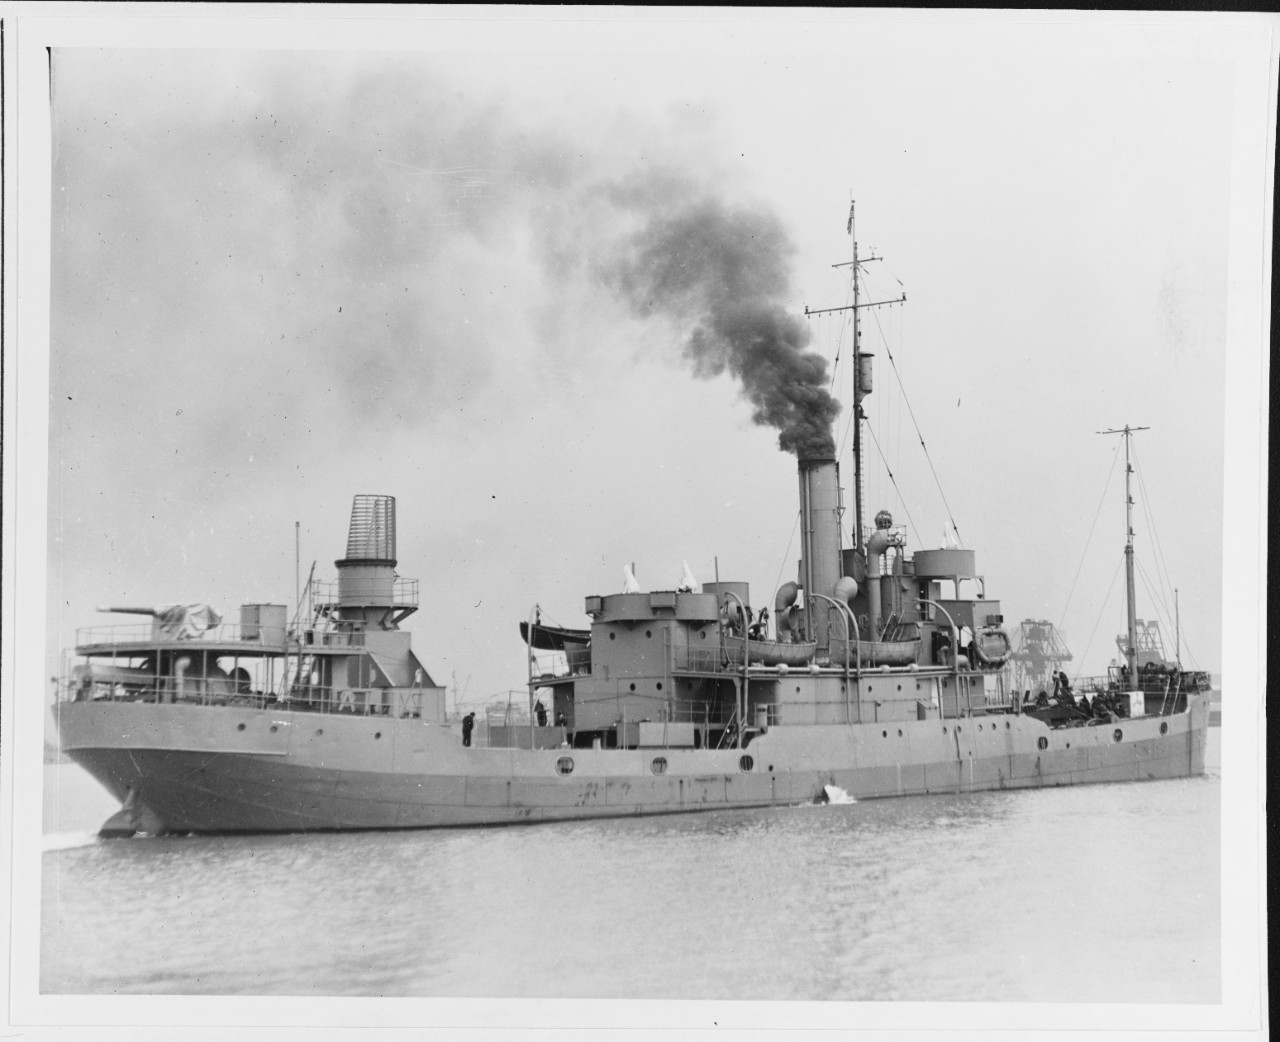 USS MENEMSHA (AG-39)